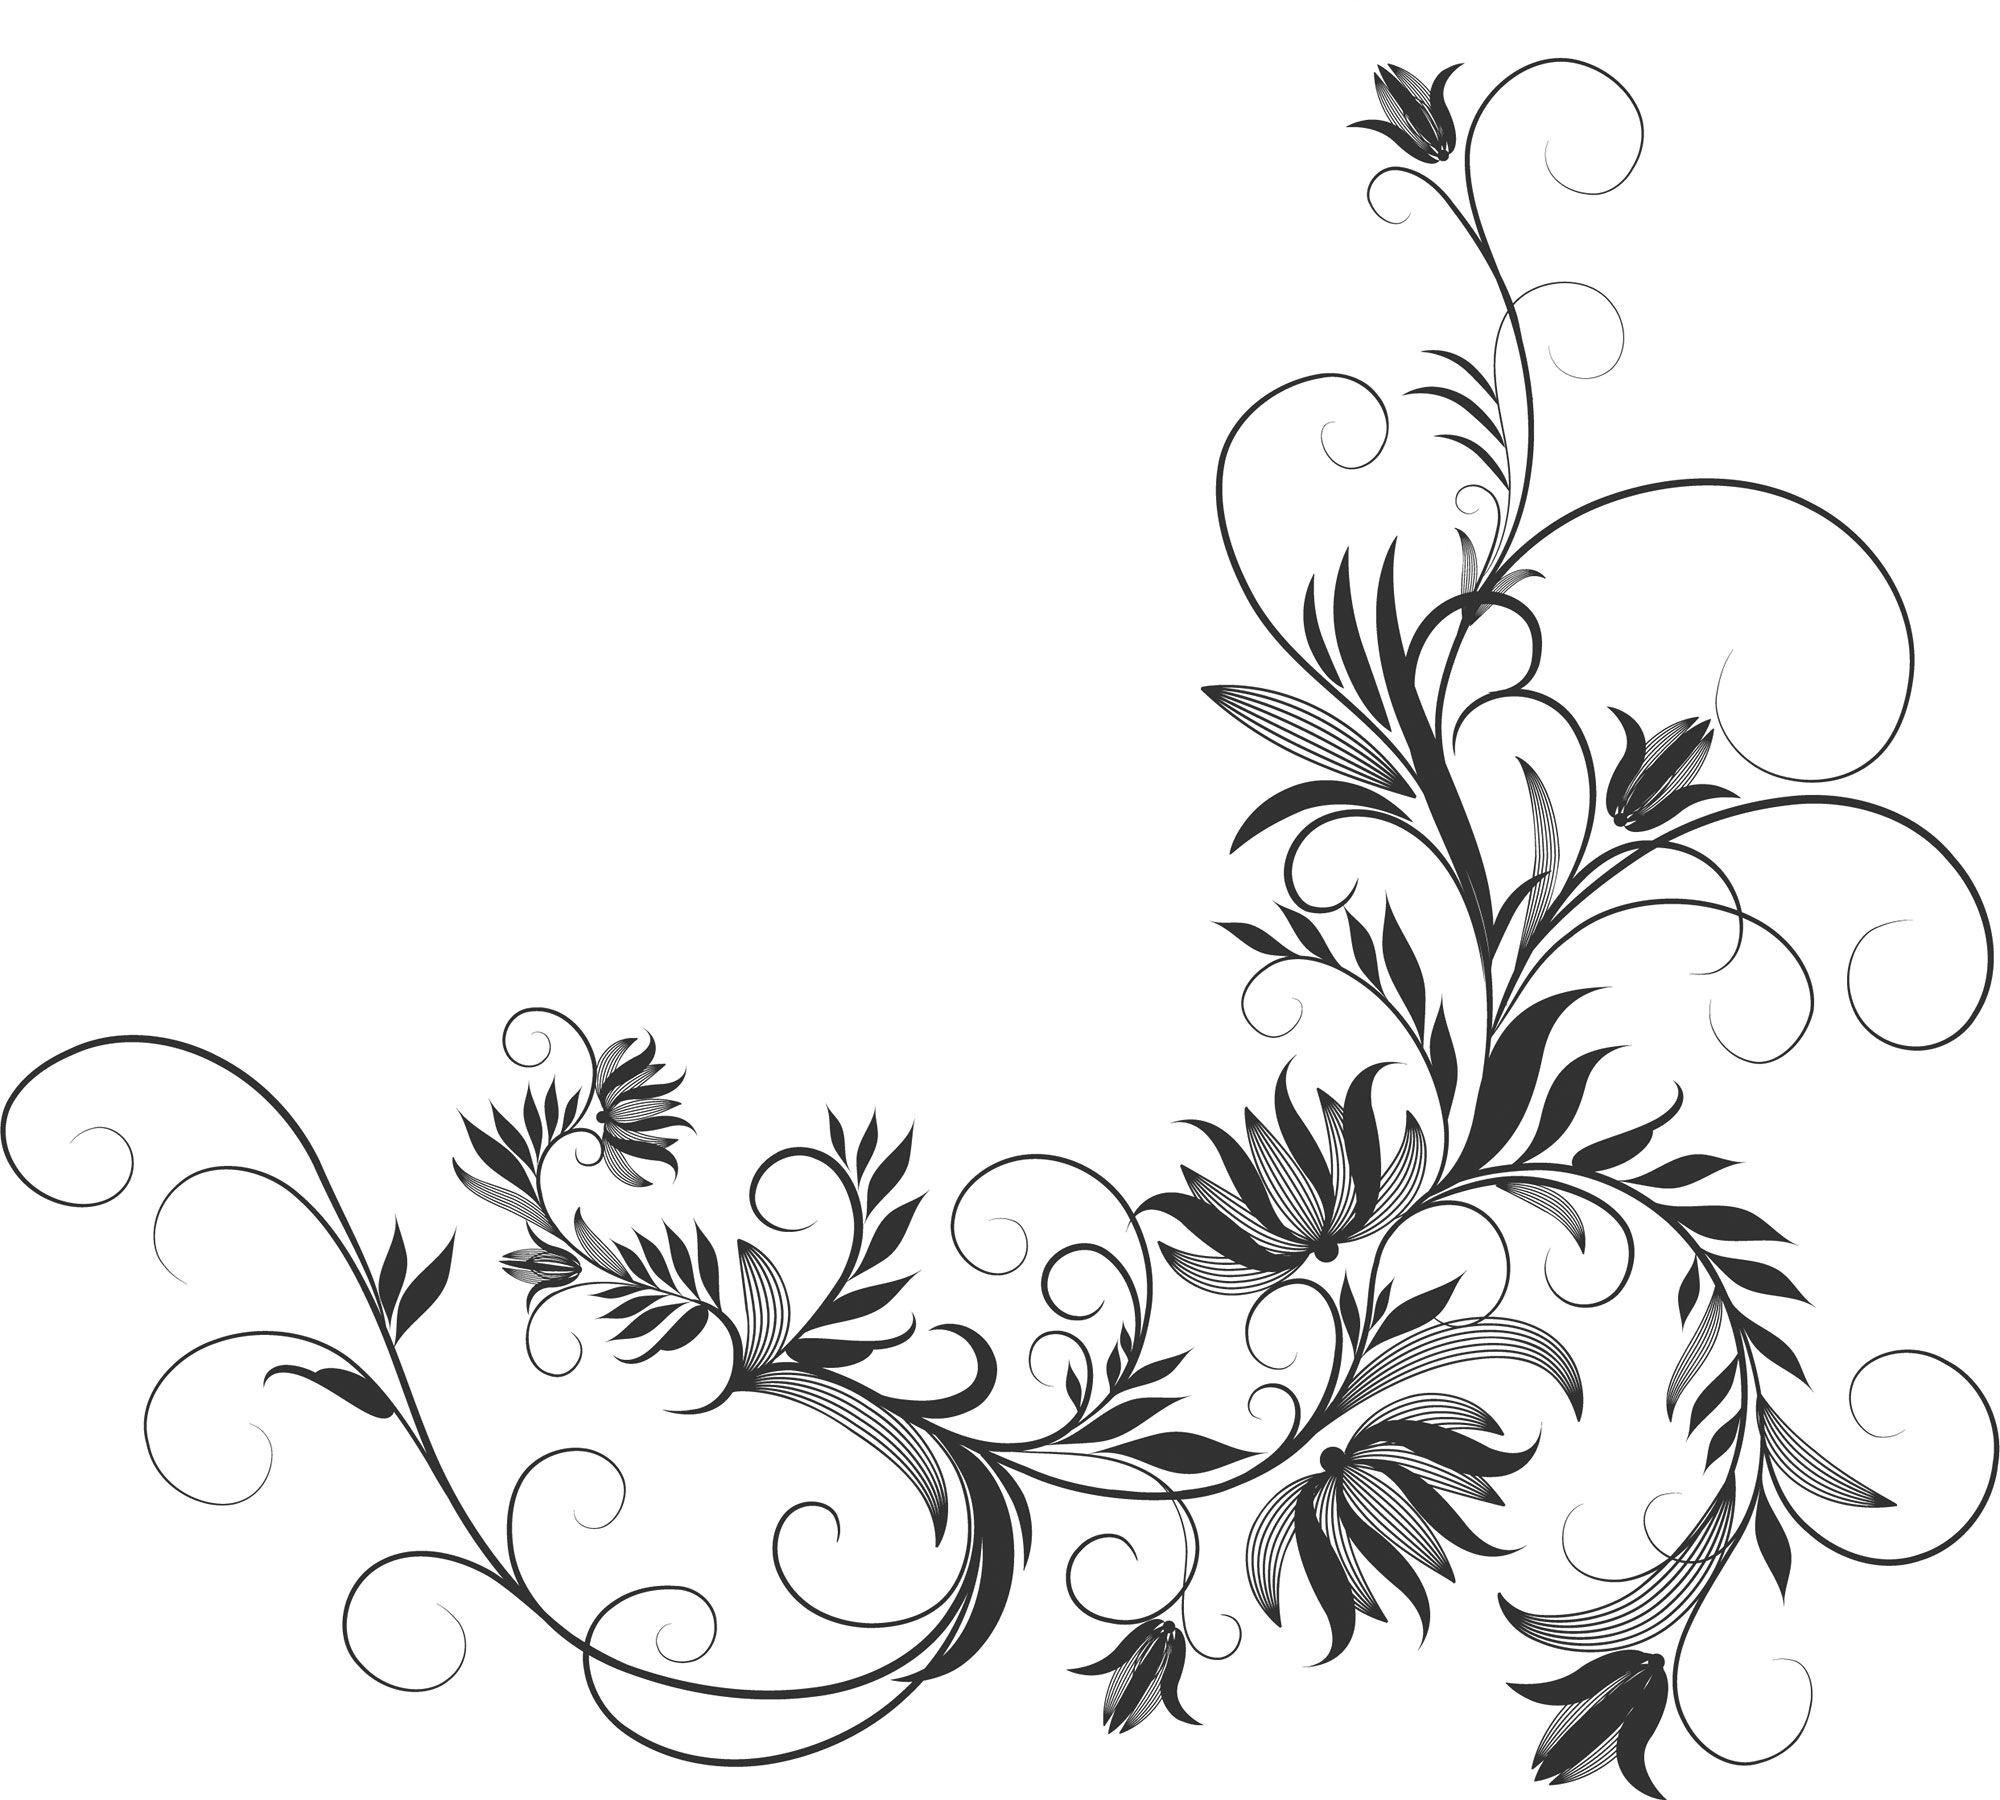 ポップでかわいい花のイラスト フリー素材 No 1190 白黒 蔓葉 コーナー